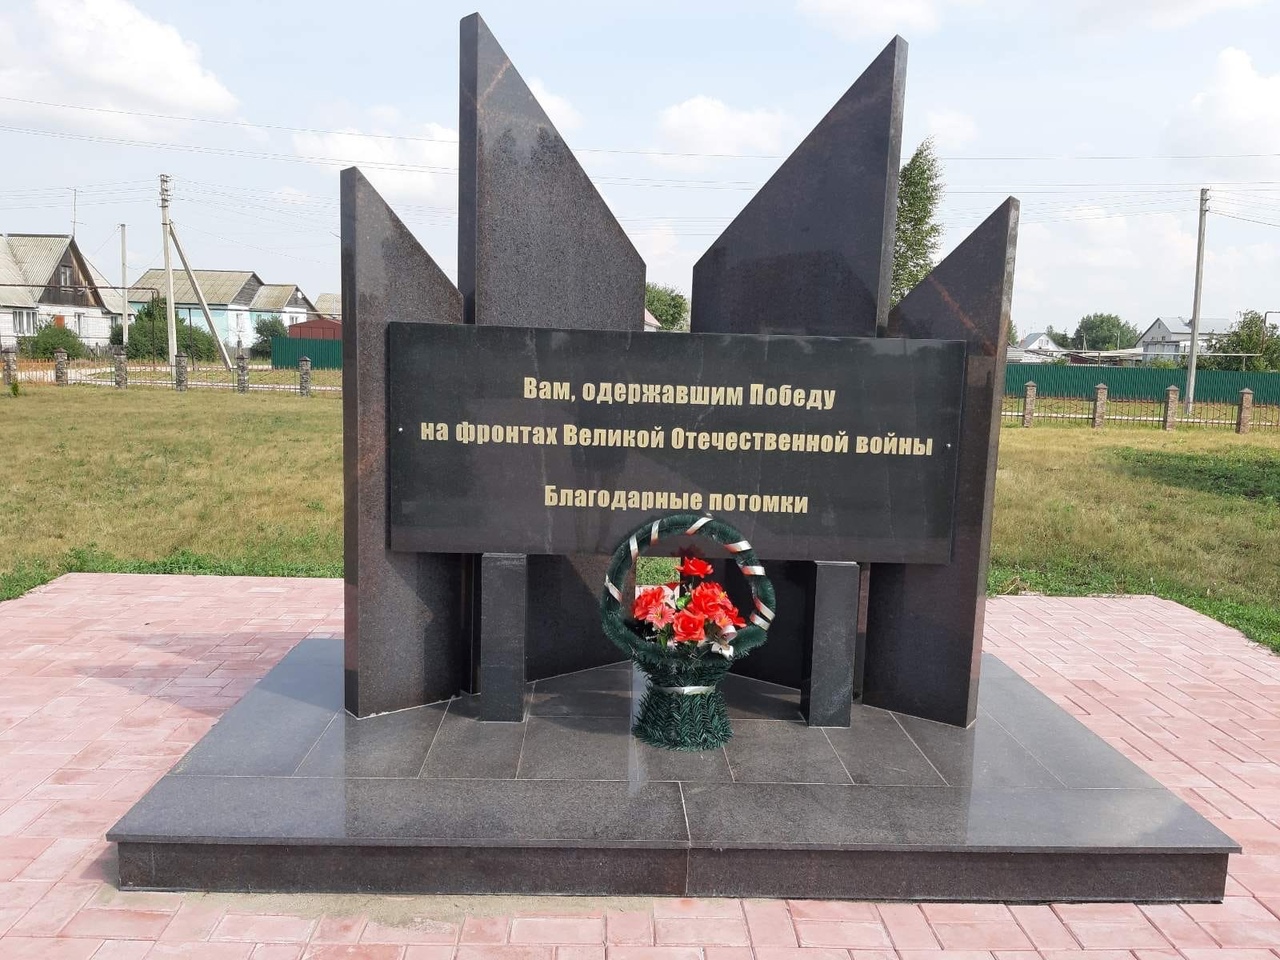 Памятник,  одержавшим Победу на фронтах Великой Отечественной войны в с. Богдашкино.